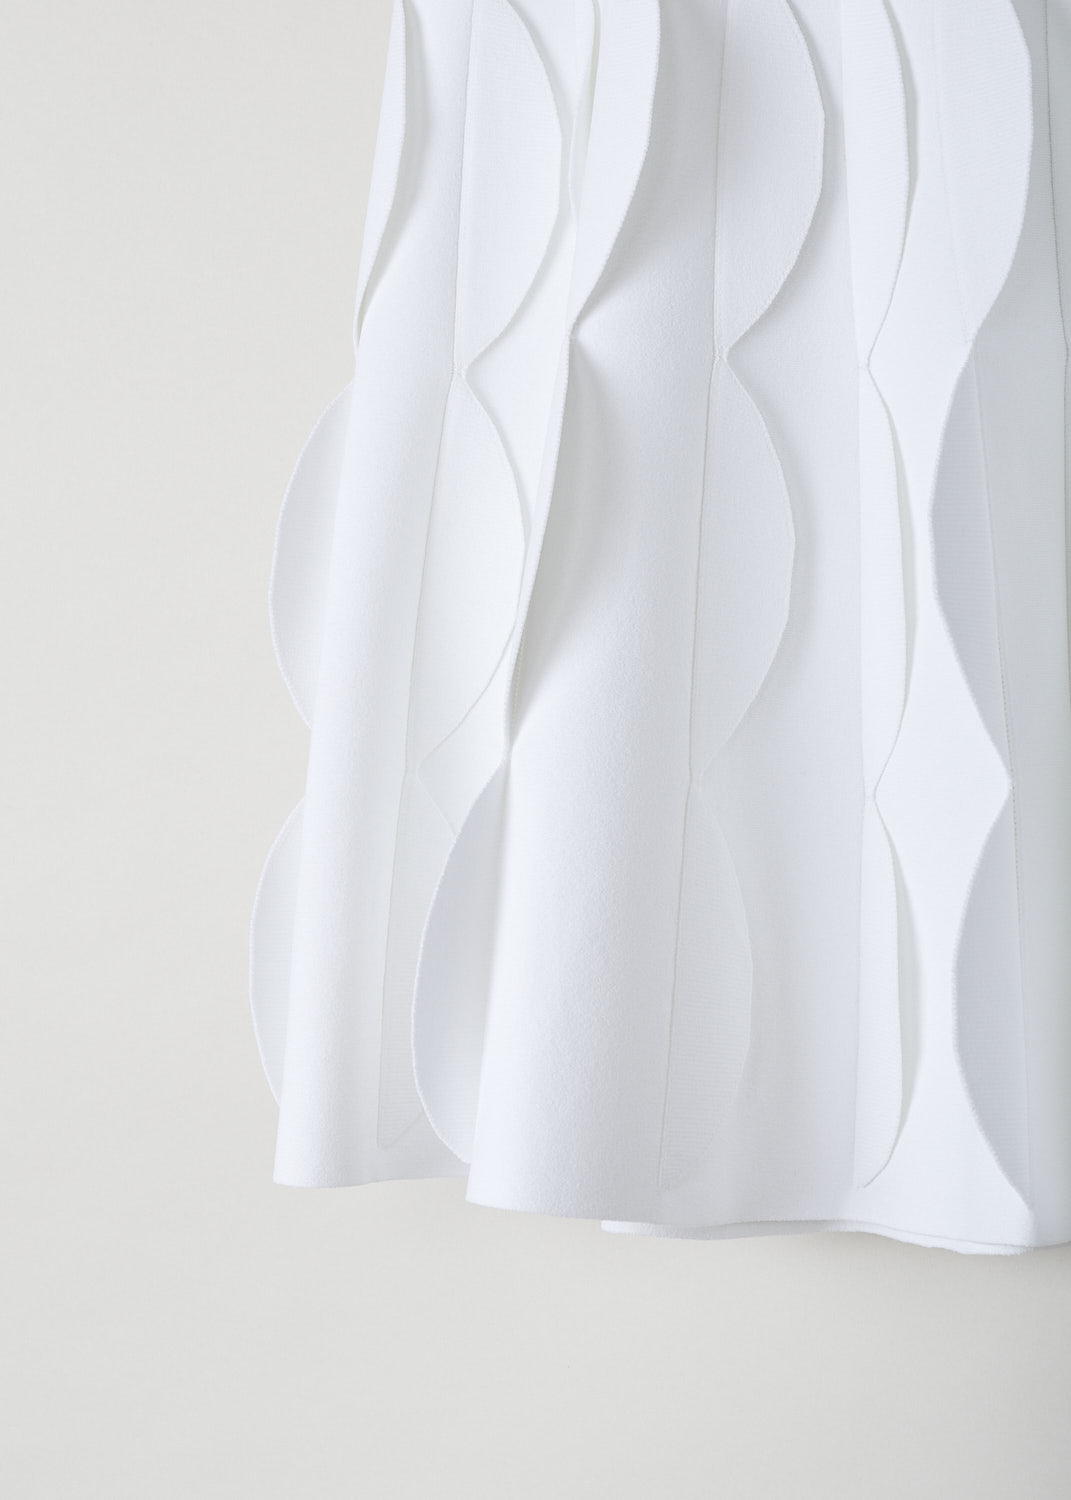 ALAÃA, WHITE SCALLOPED MINI SKIRT, AA9J2051CM609_JUPE_COURTE_BLANC, White, Detail, This white A-line mini skirt has a broad waistline with a scalloped outer edge. The skirt flares out into scalloped pleats throughout. 
